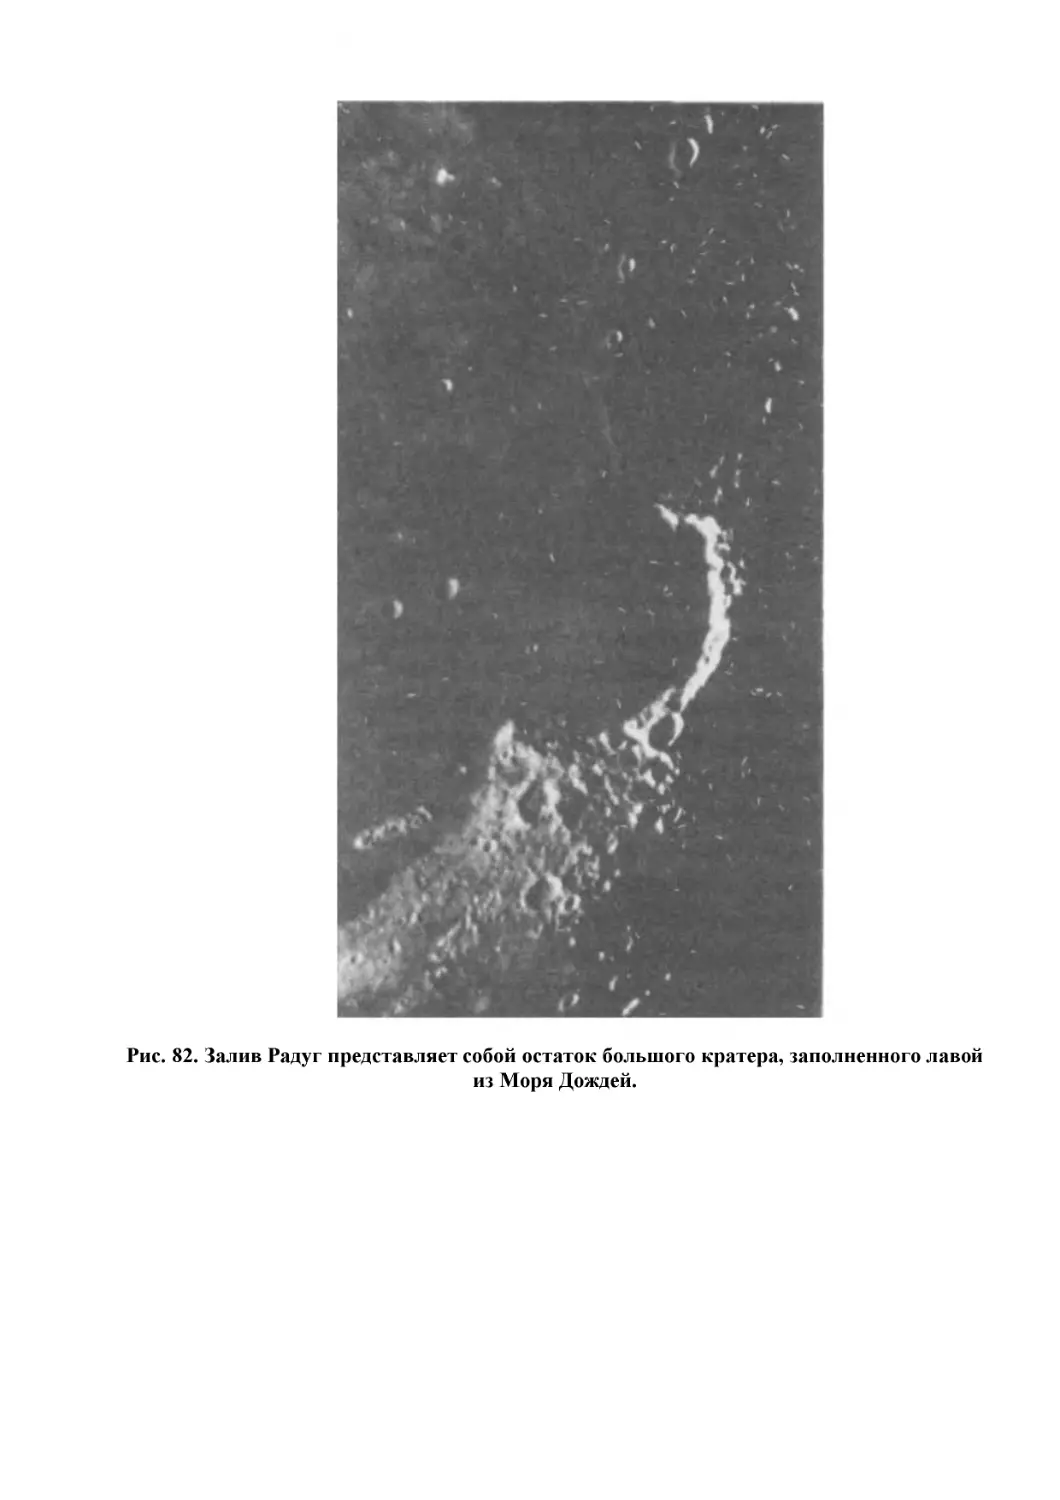 Рис. 82. Залив Радуг представляет собой остаток большого кратера, заполненного лавой из Моря Дождей.